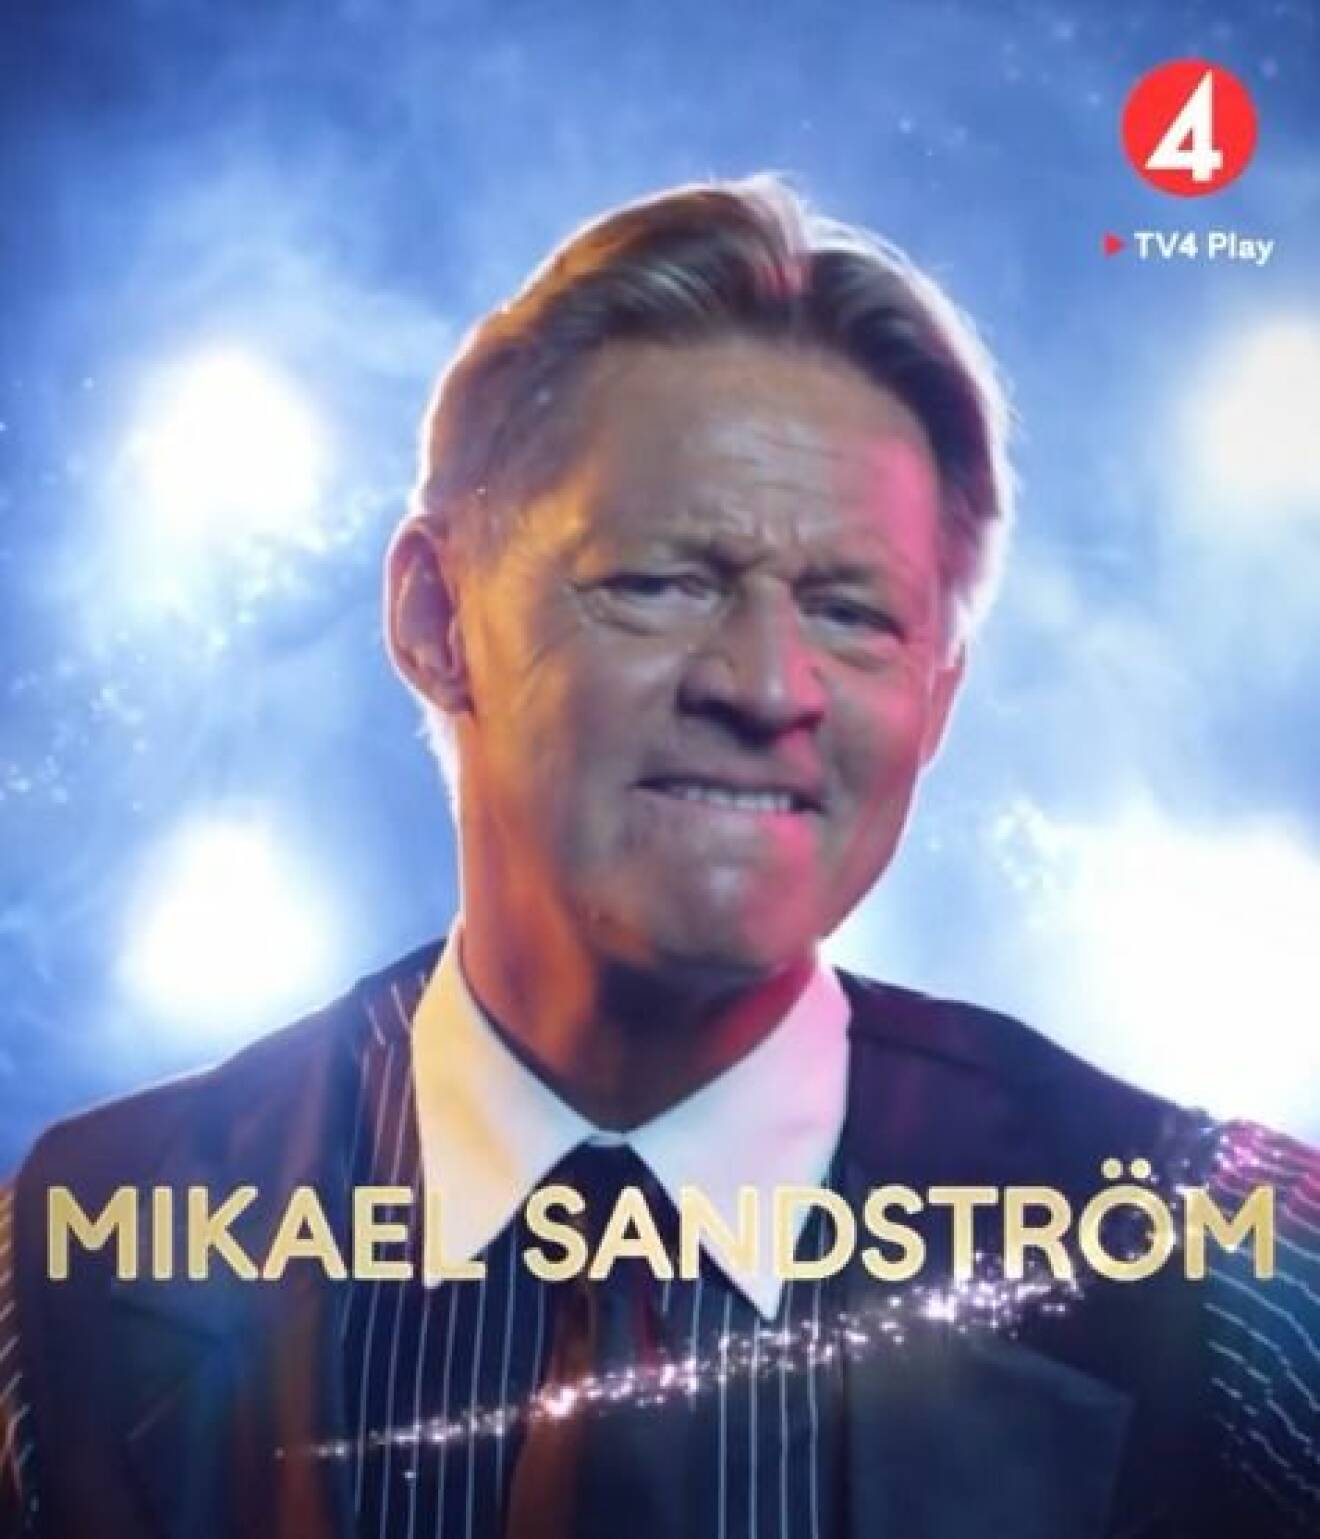 Mikael Sandström är med i Let's dance 2020